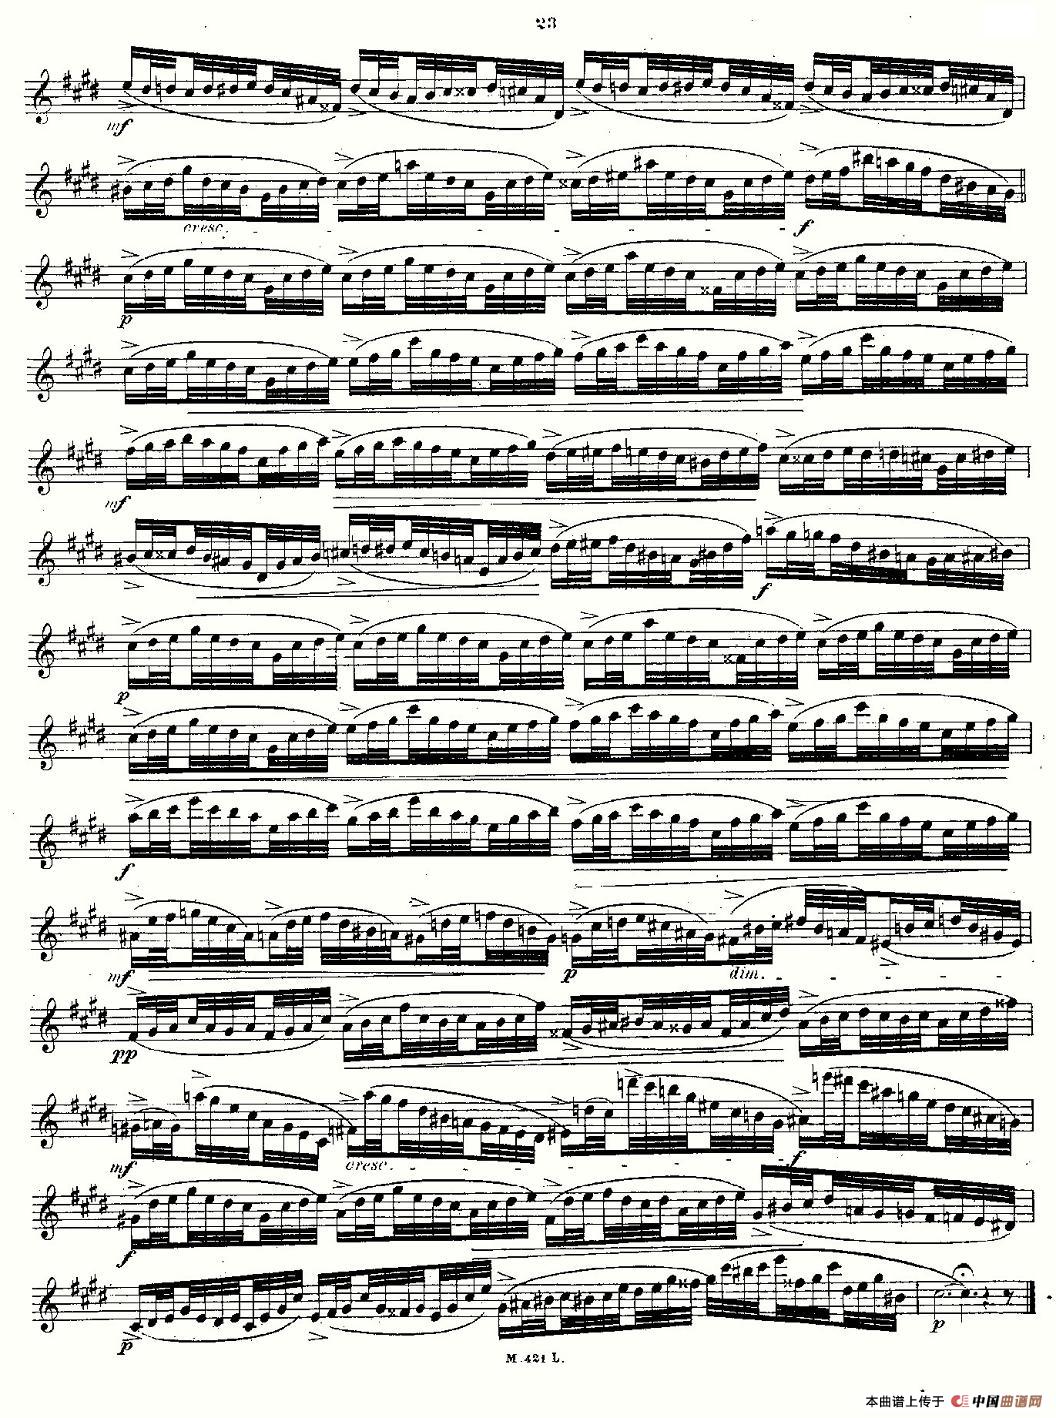 24首长笛练习曲 Op.15 之6—10